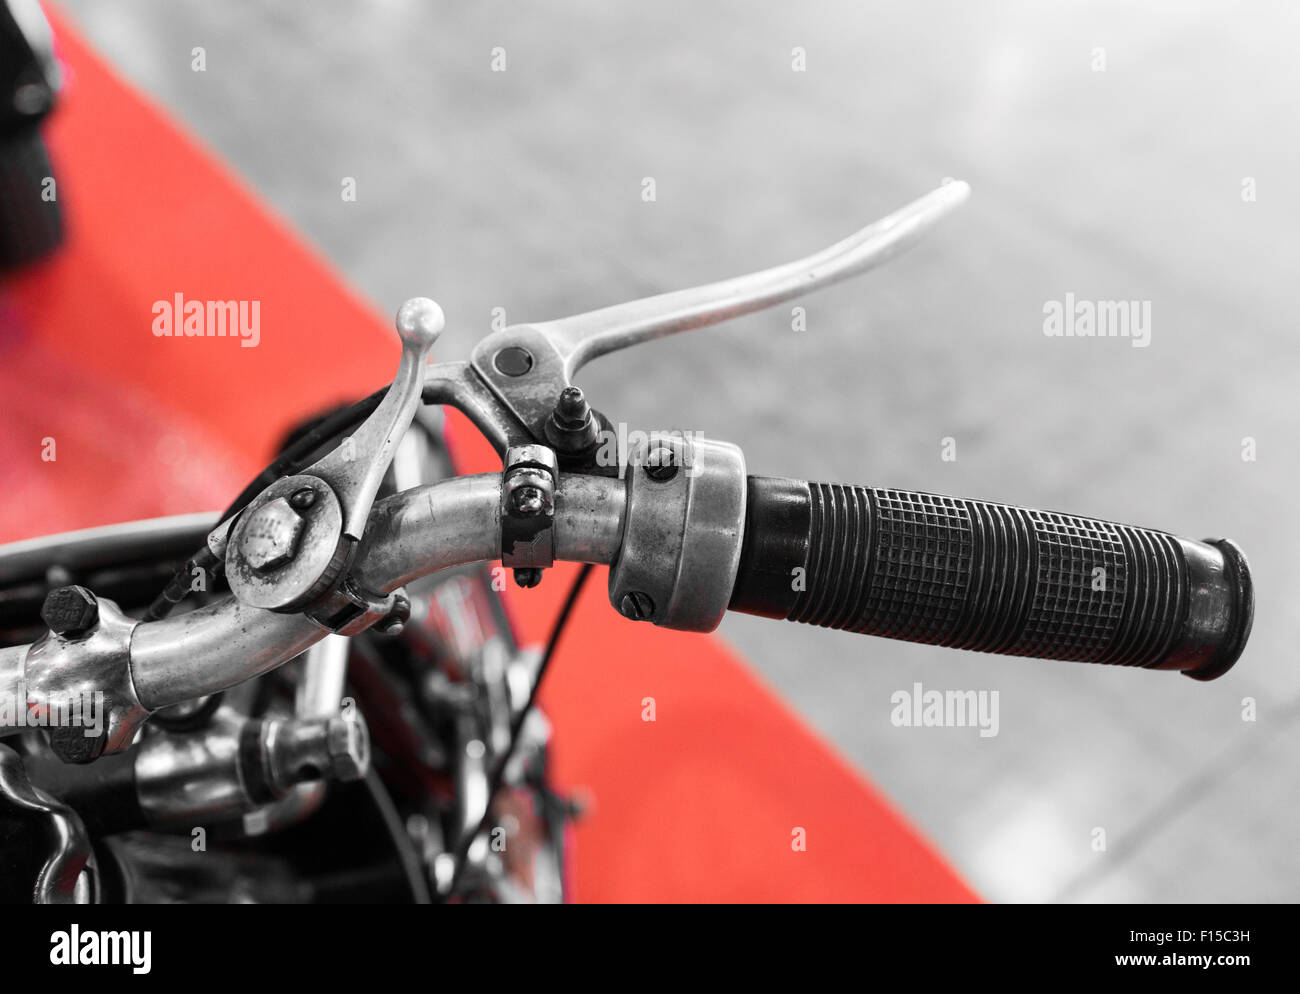 Palanca de cambios de moto fotografías e imágenes de alta resolución - Alamy